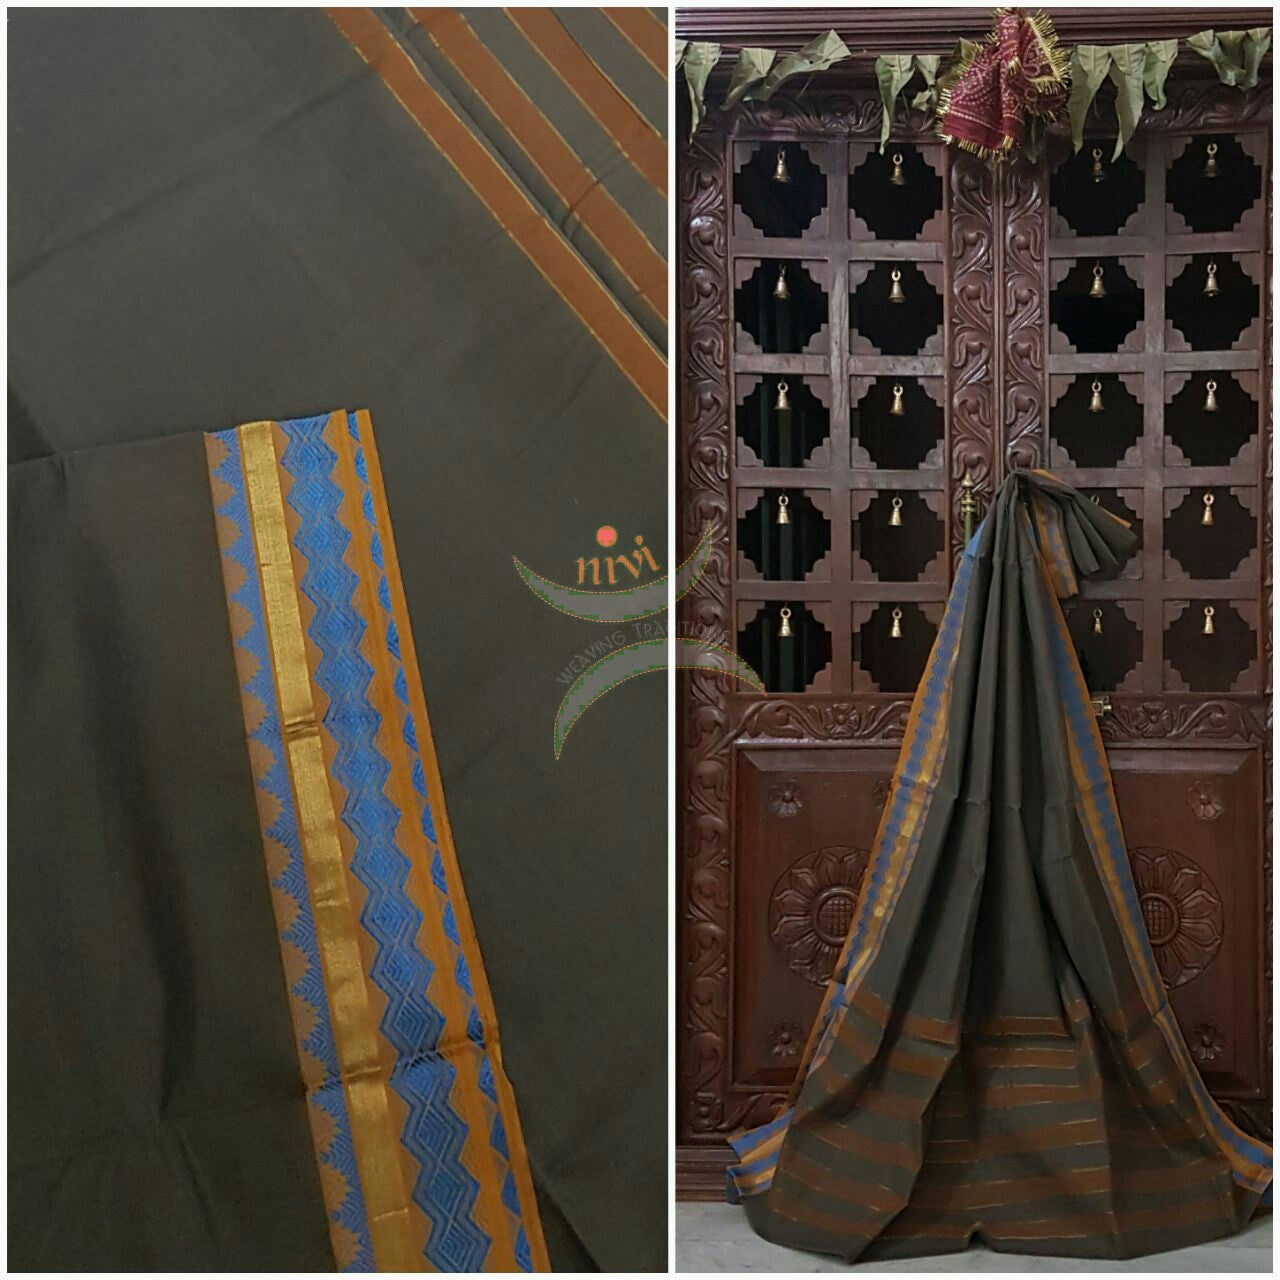 Cotton sarees with woven zari border and striped pallu.